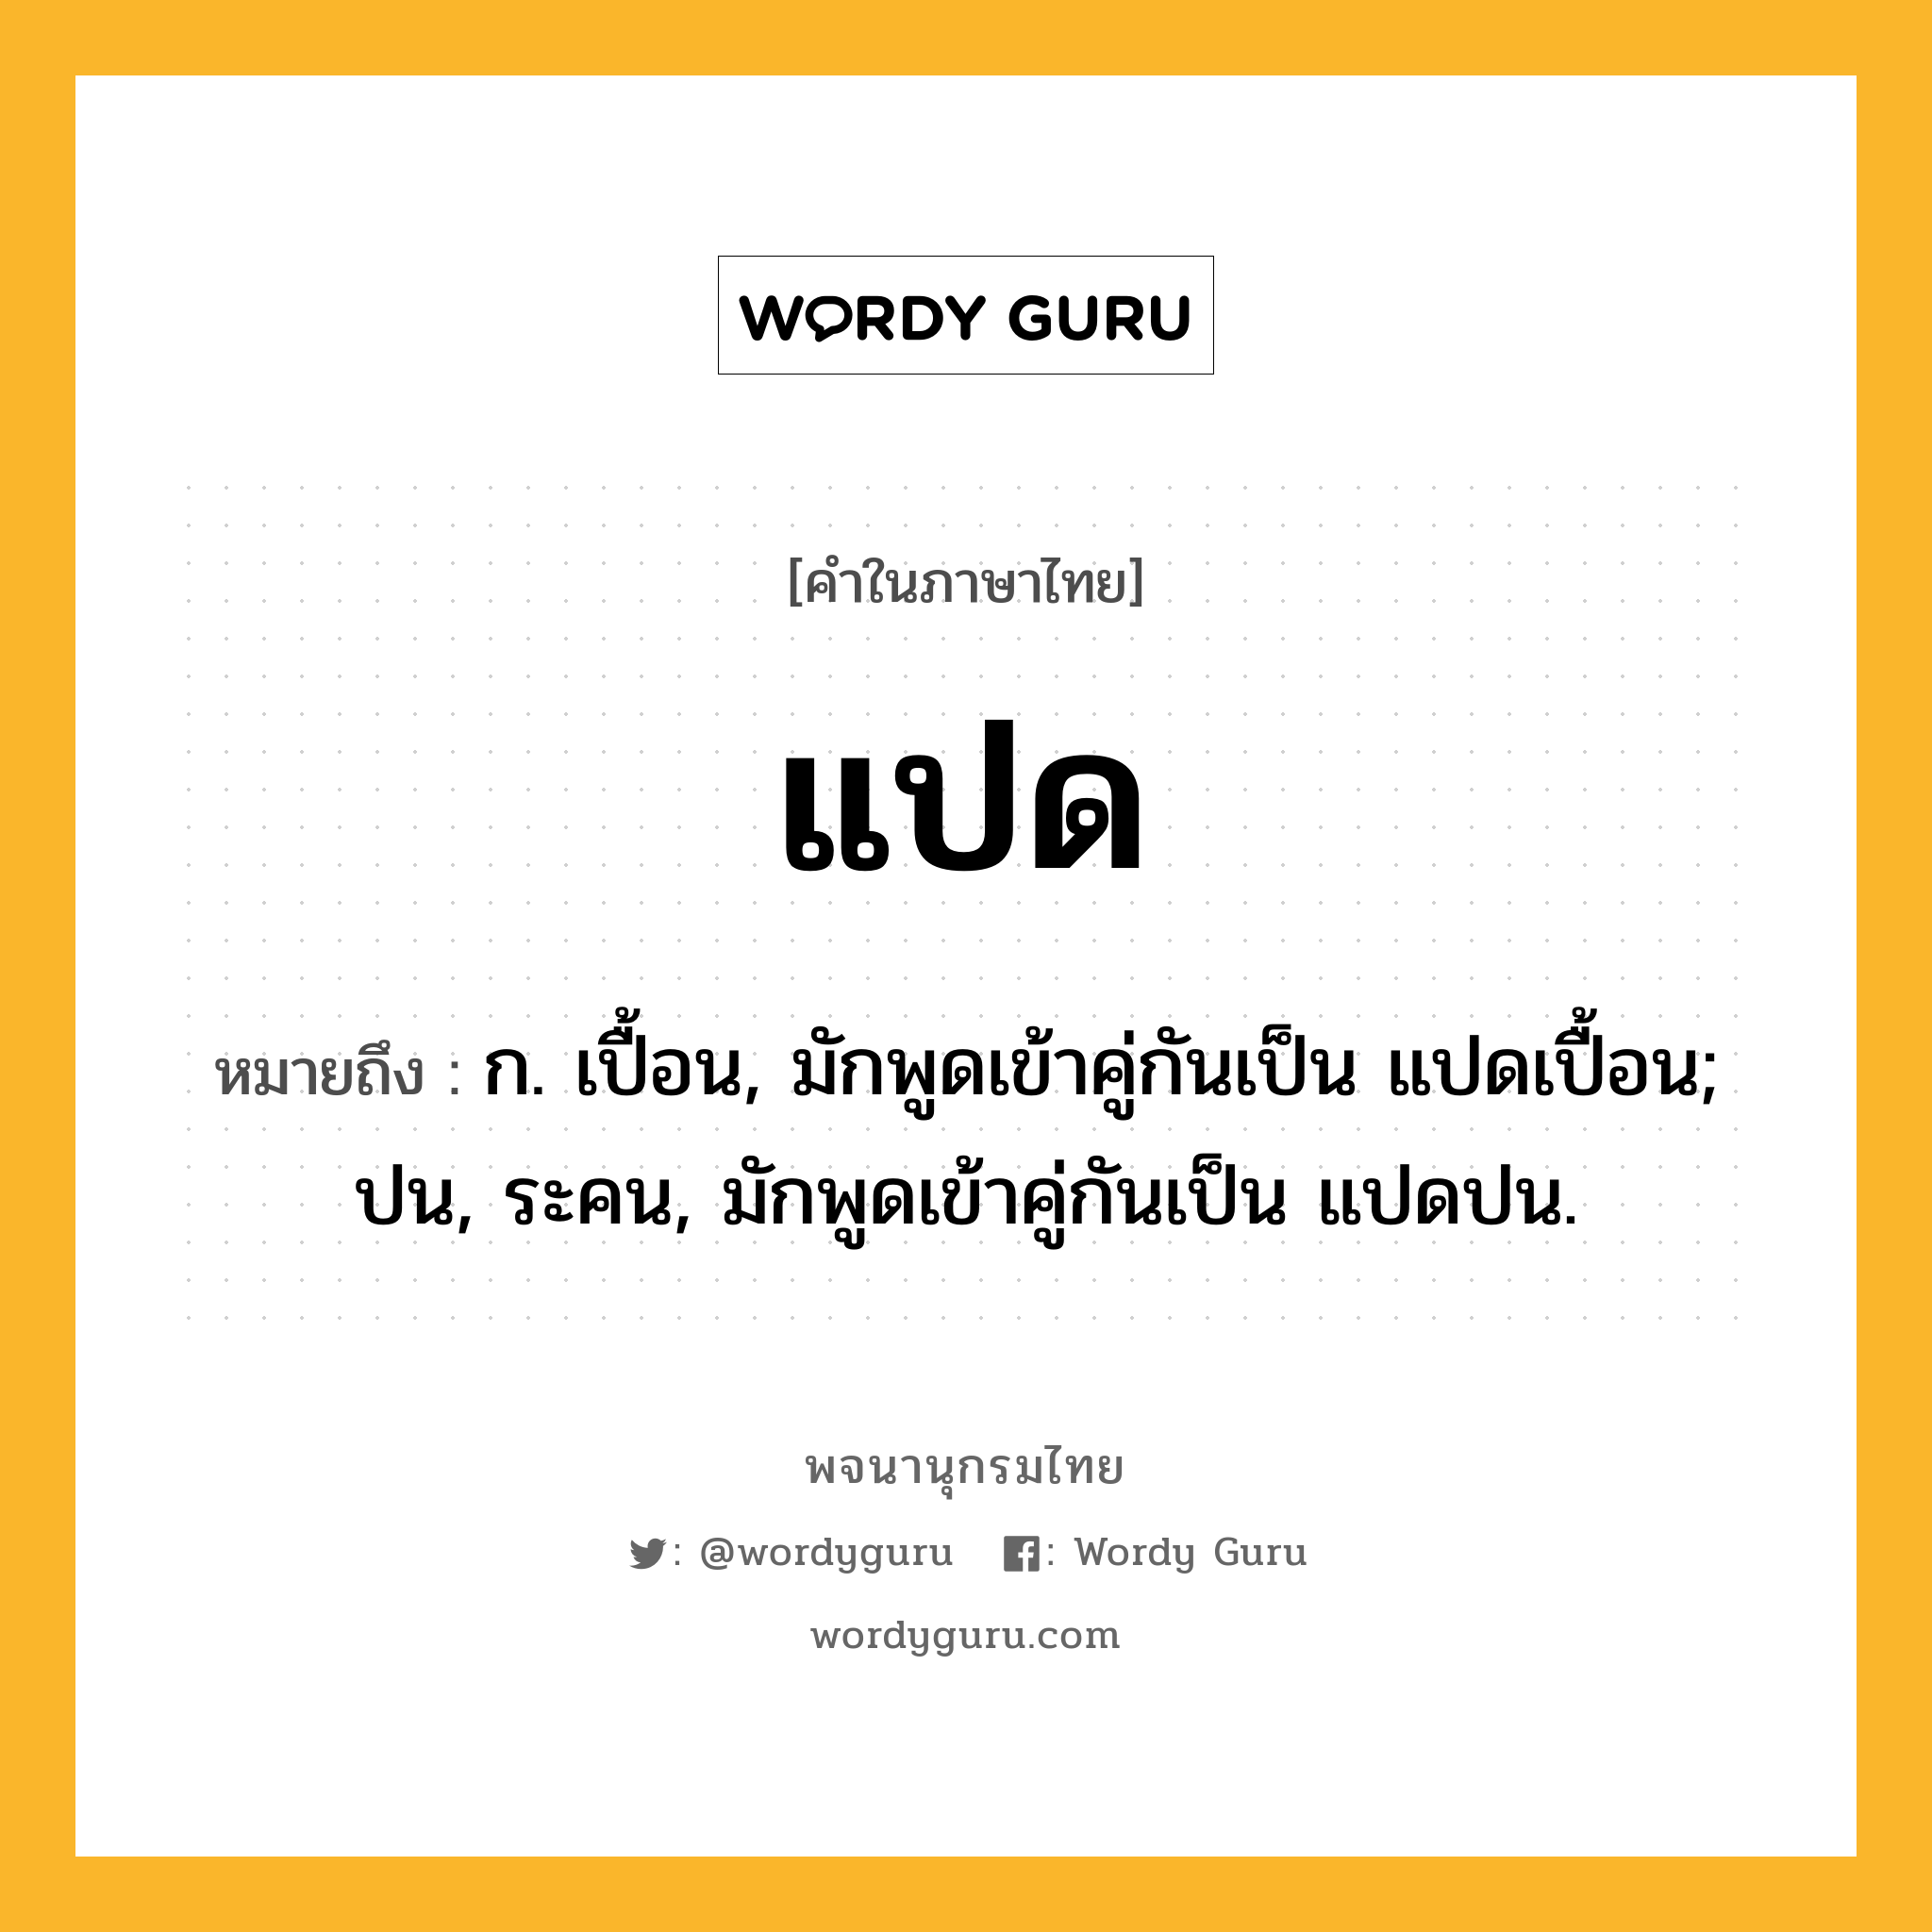 แปด ความหมาย หมายถึงอะไร?, คำในภาษาไทย แปด หมายถึง ก. เปื้อน, มักพูดเข้าคู่กันเป็น แปดเปื้อน; ปน, ระคน, มักพูดเข้าคู่กันเป็น แปดปน.